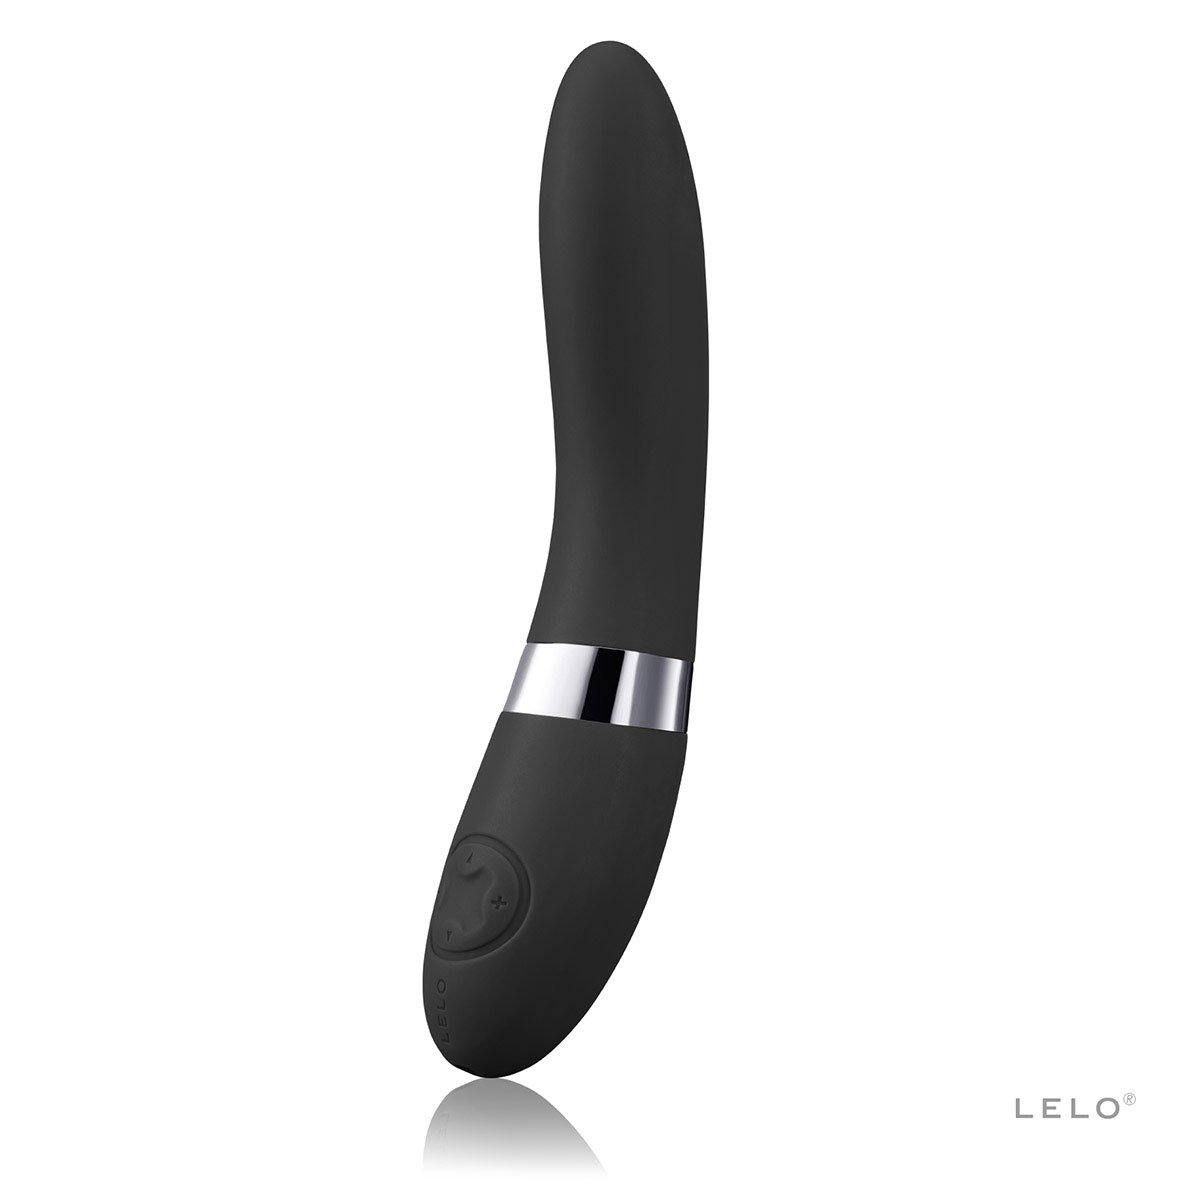 Lelo Elise 2 - Buy At Luxury Toy X - Free 3-Day Shipping